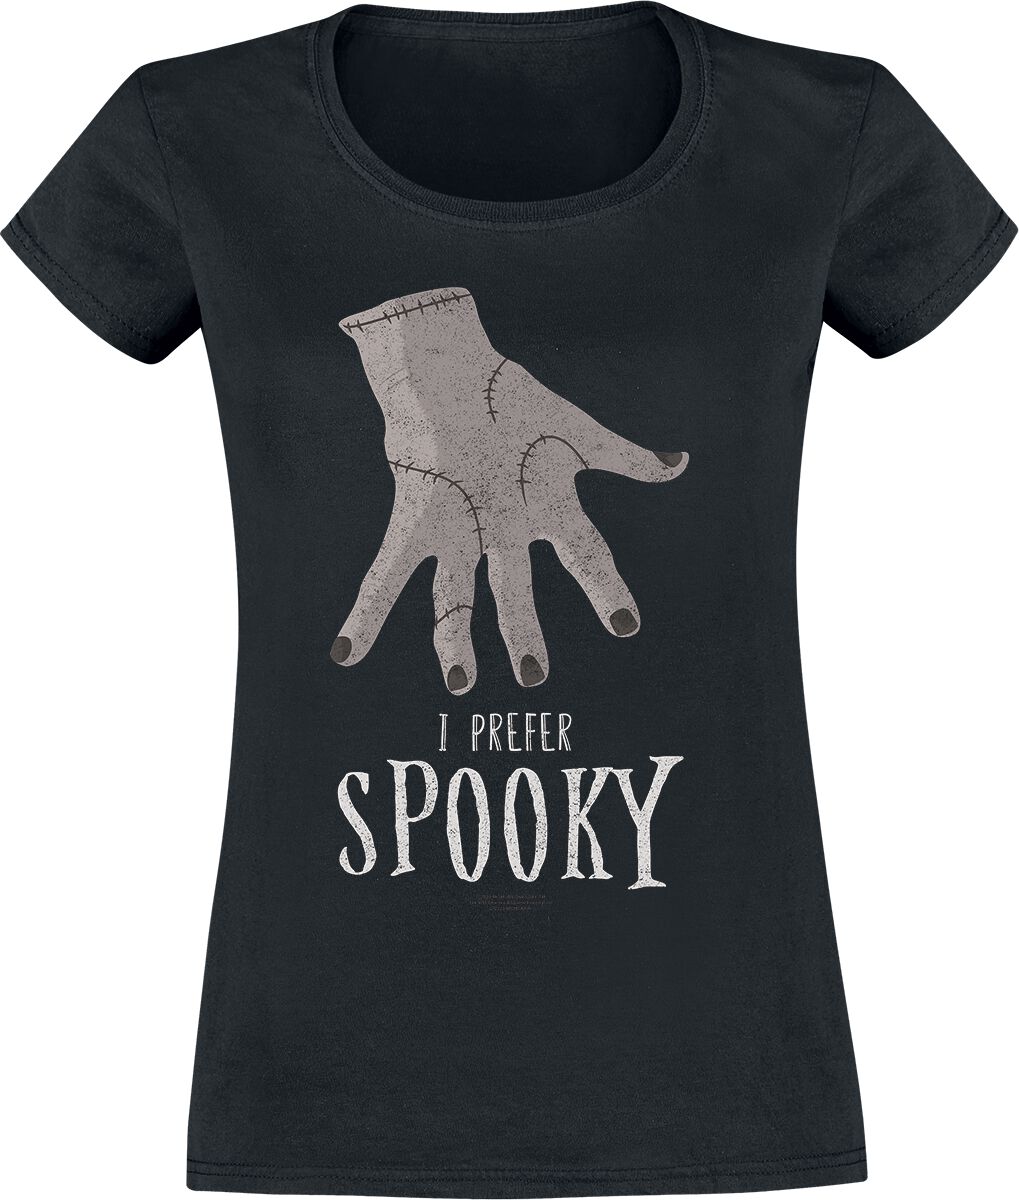 T-Shirt Manches courtes de Wednesday - Spooky - S à XXL - pour Femme - noir